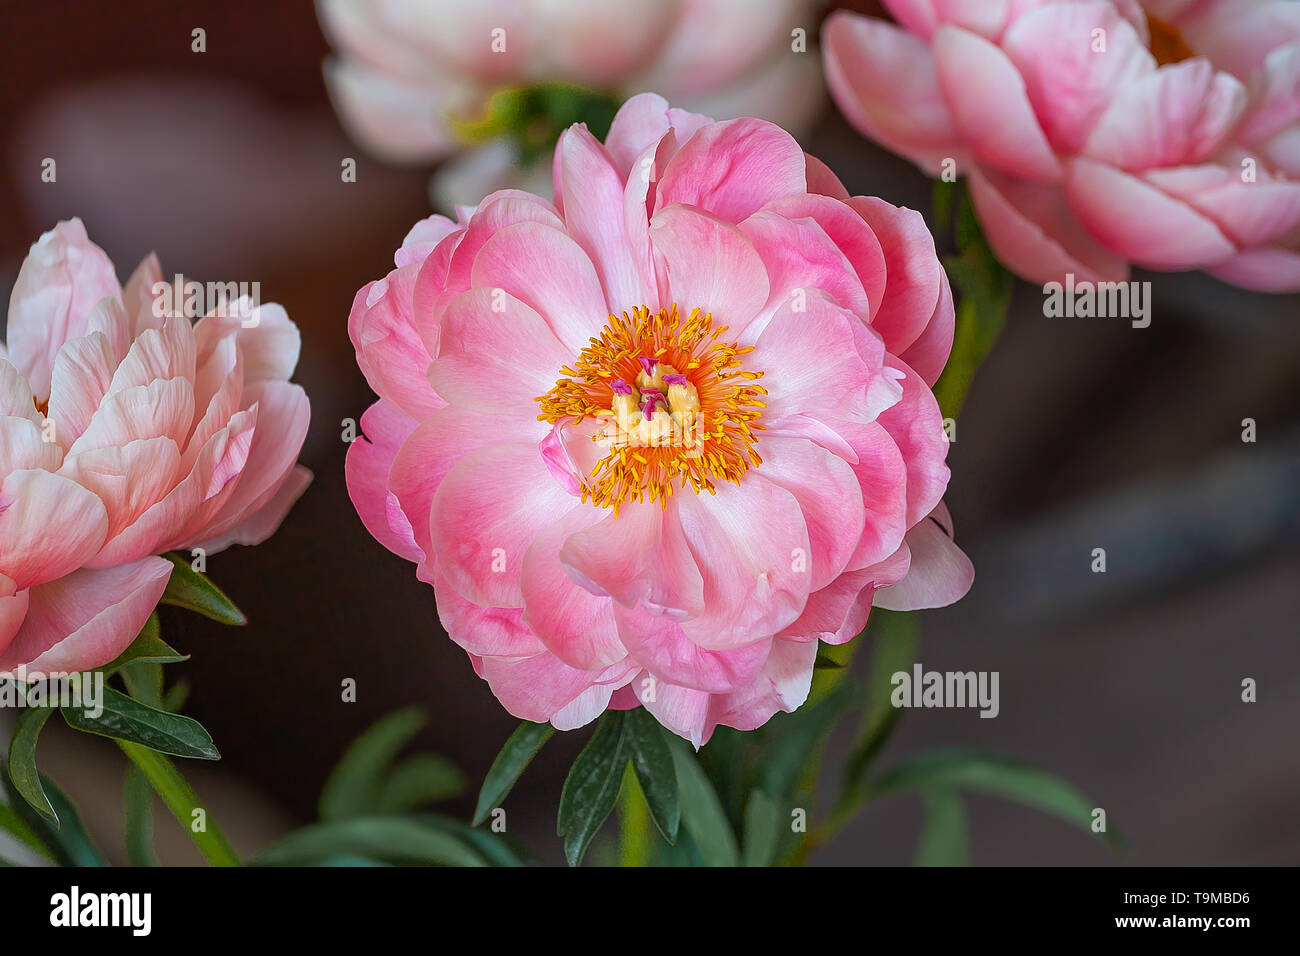 Rosa pfingstrose Blumen, close-up Stockfoto